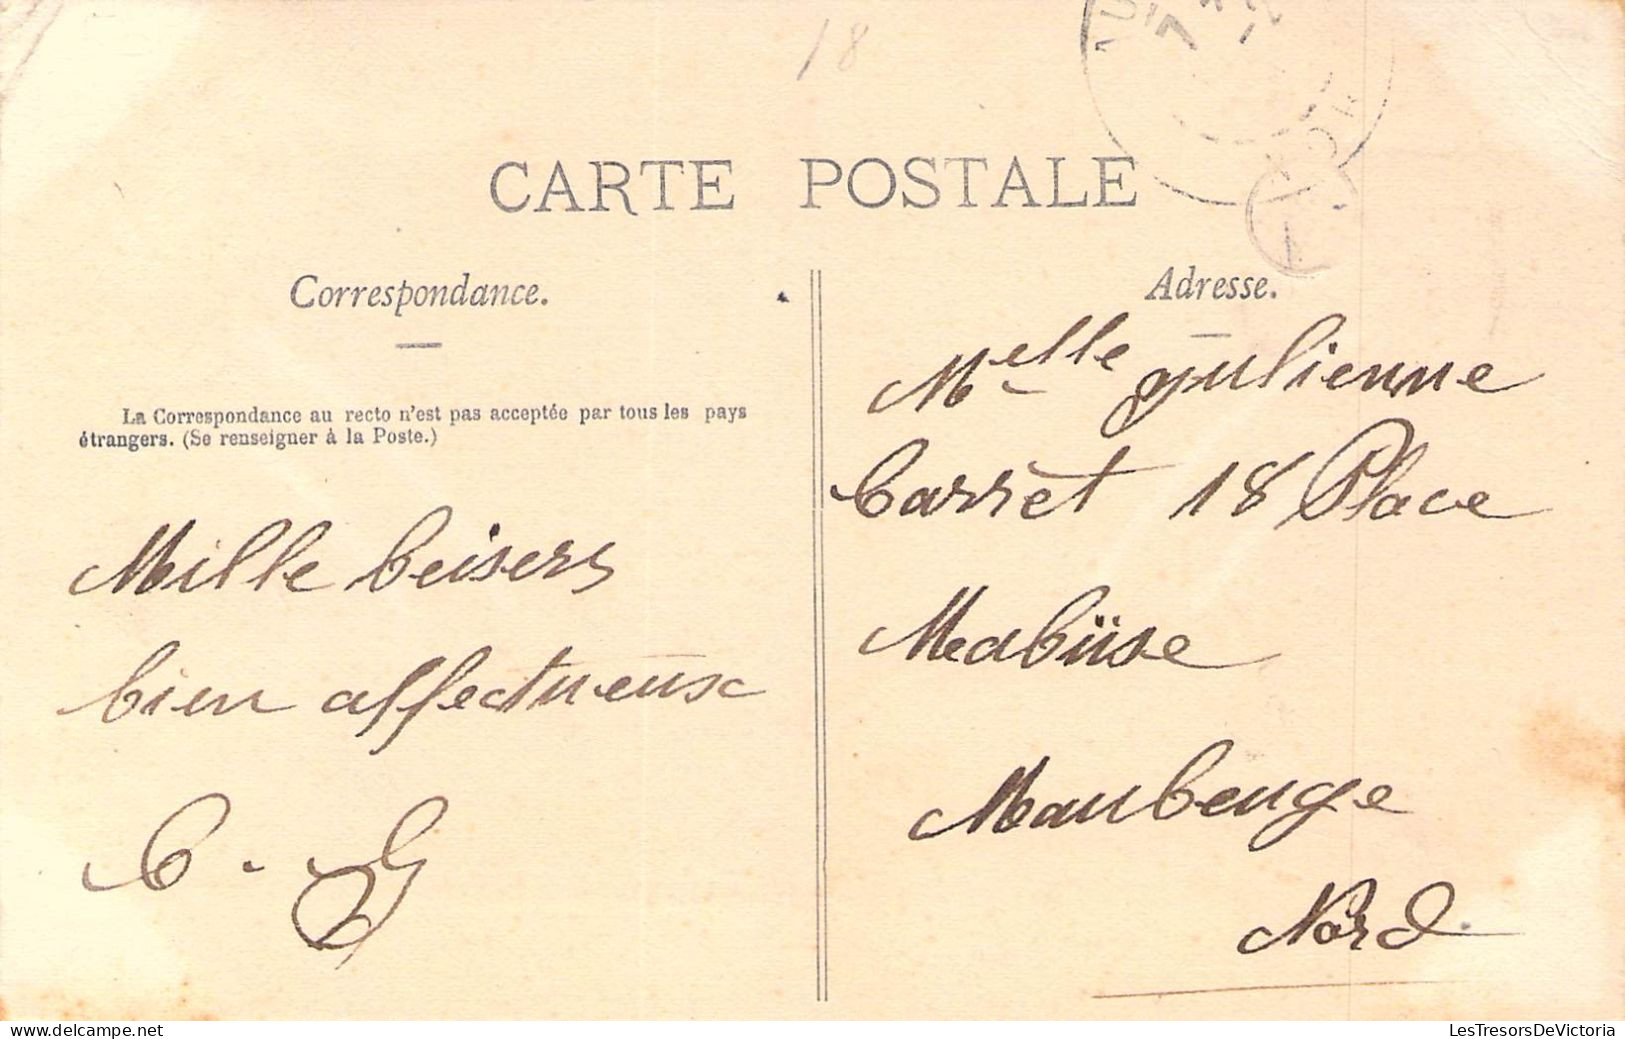 FRANCE - 55 - VIGNOT - Place Carnot - Carte Postale Ancienne - Bar Le Duc